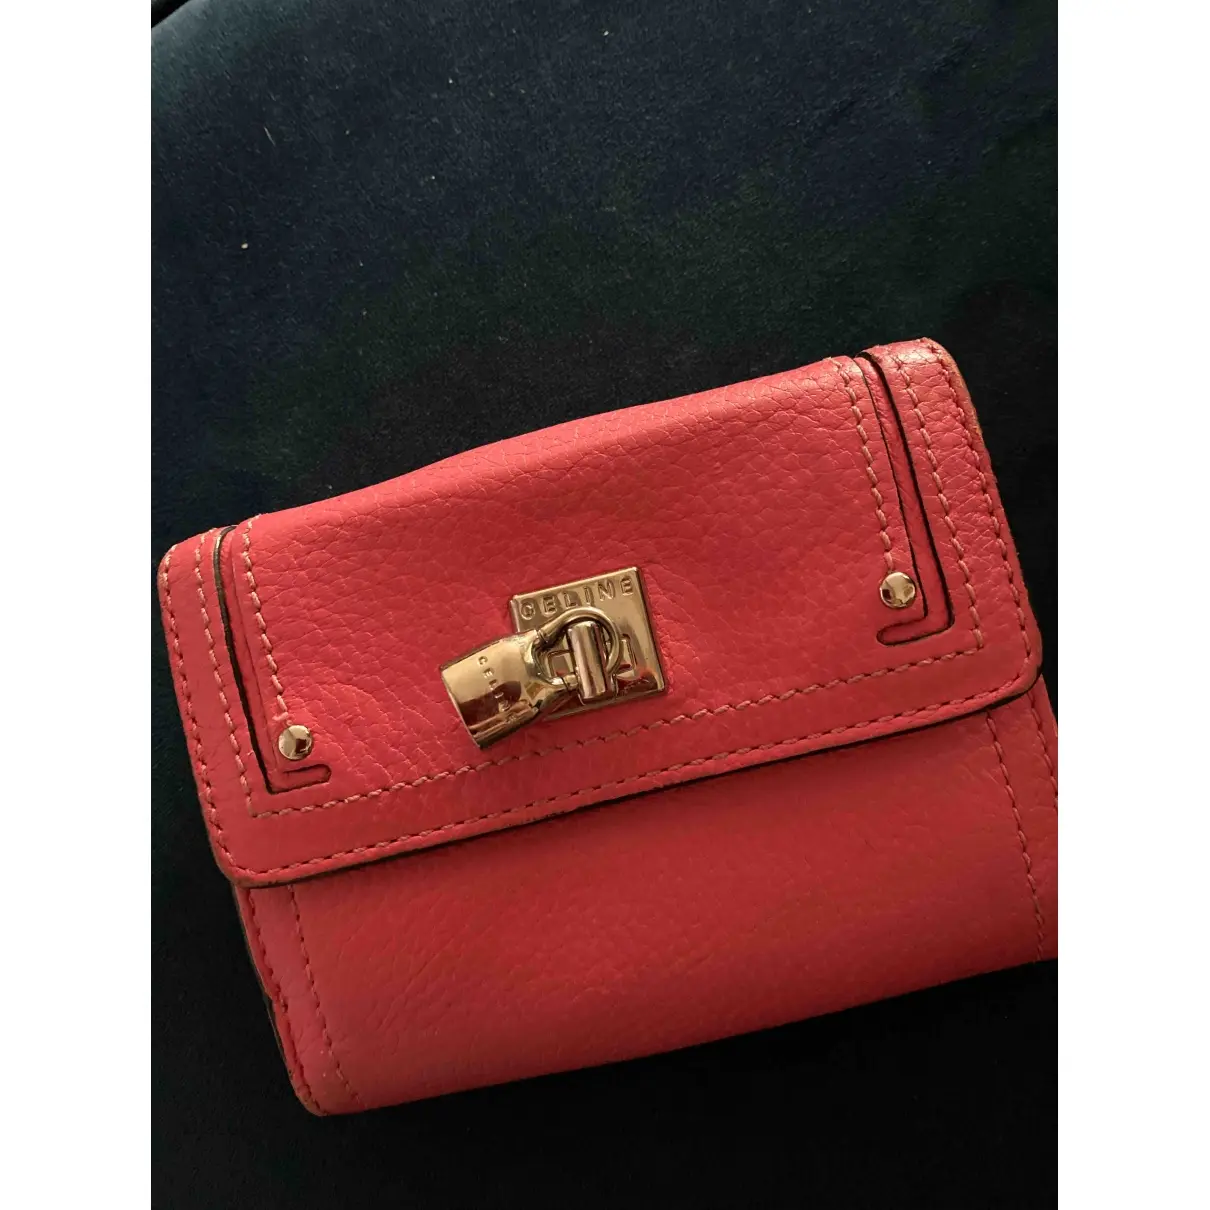 Buy Celine Leather wallet online - Vintage